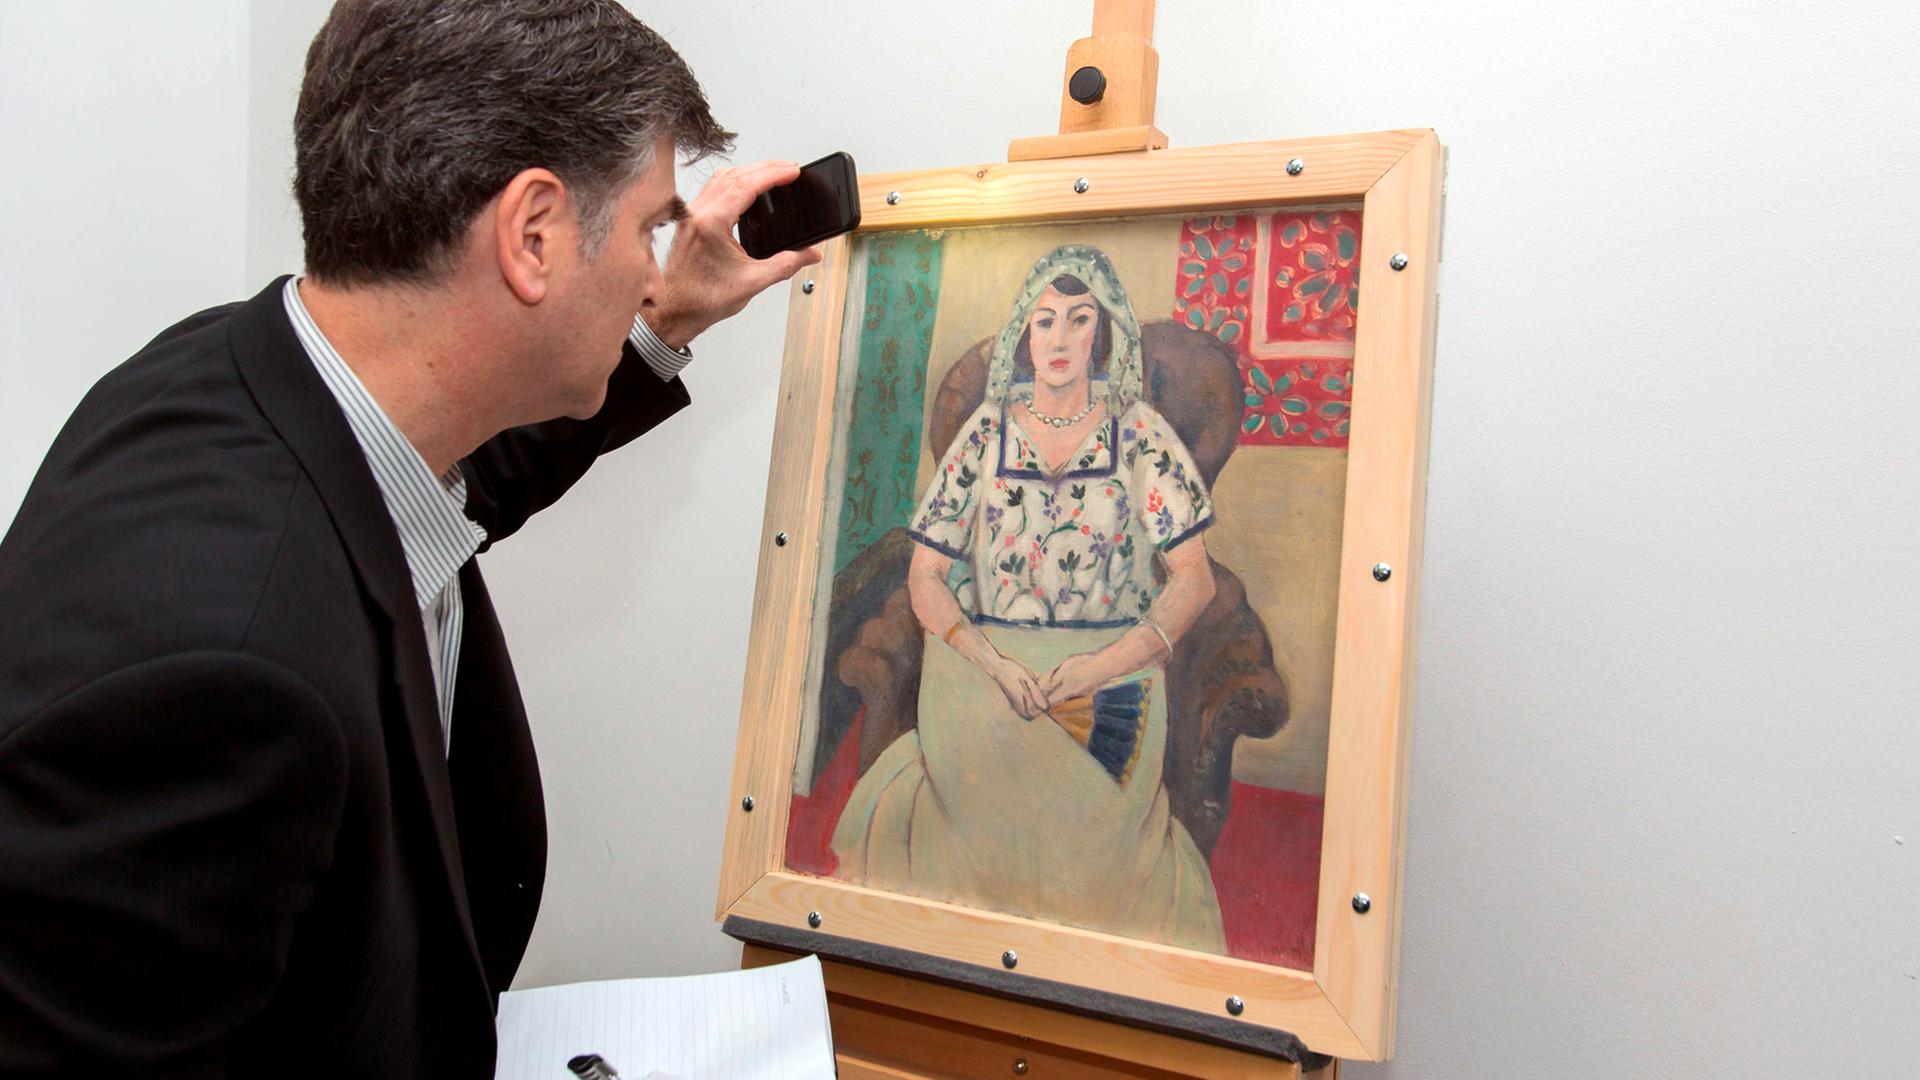 Der Vertreter der Familie Rosenberg, Christopher Marinello, nimmt am 15.05.2015 das Gemälde "Sitzende Frau" von Henri Matisse in der Nähe von München (Bayern) entgegen. Das Bild ist eines der berühmtesten Gemälde aus der umstrittenen Kunstsammlung von Cornelius Gurlitt.